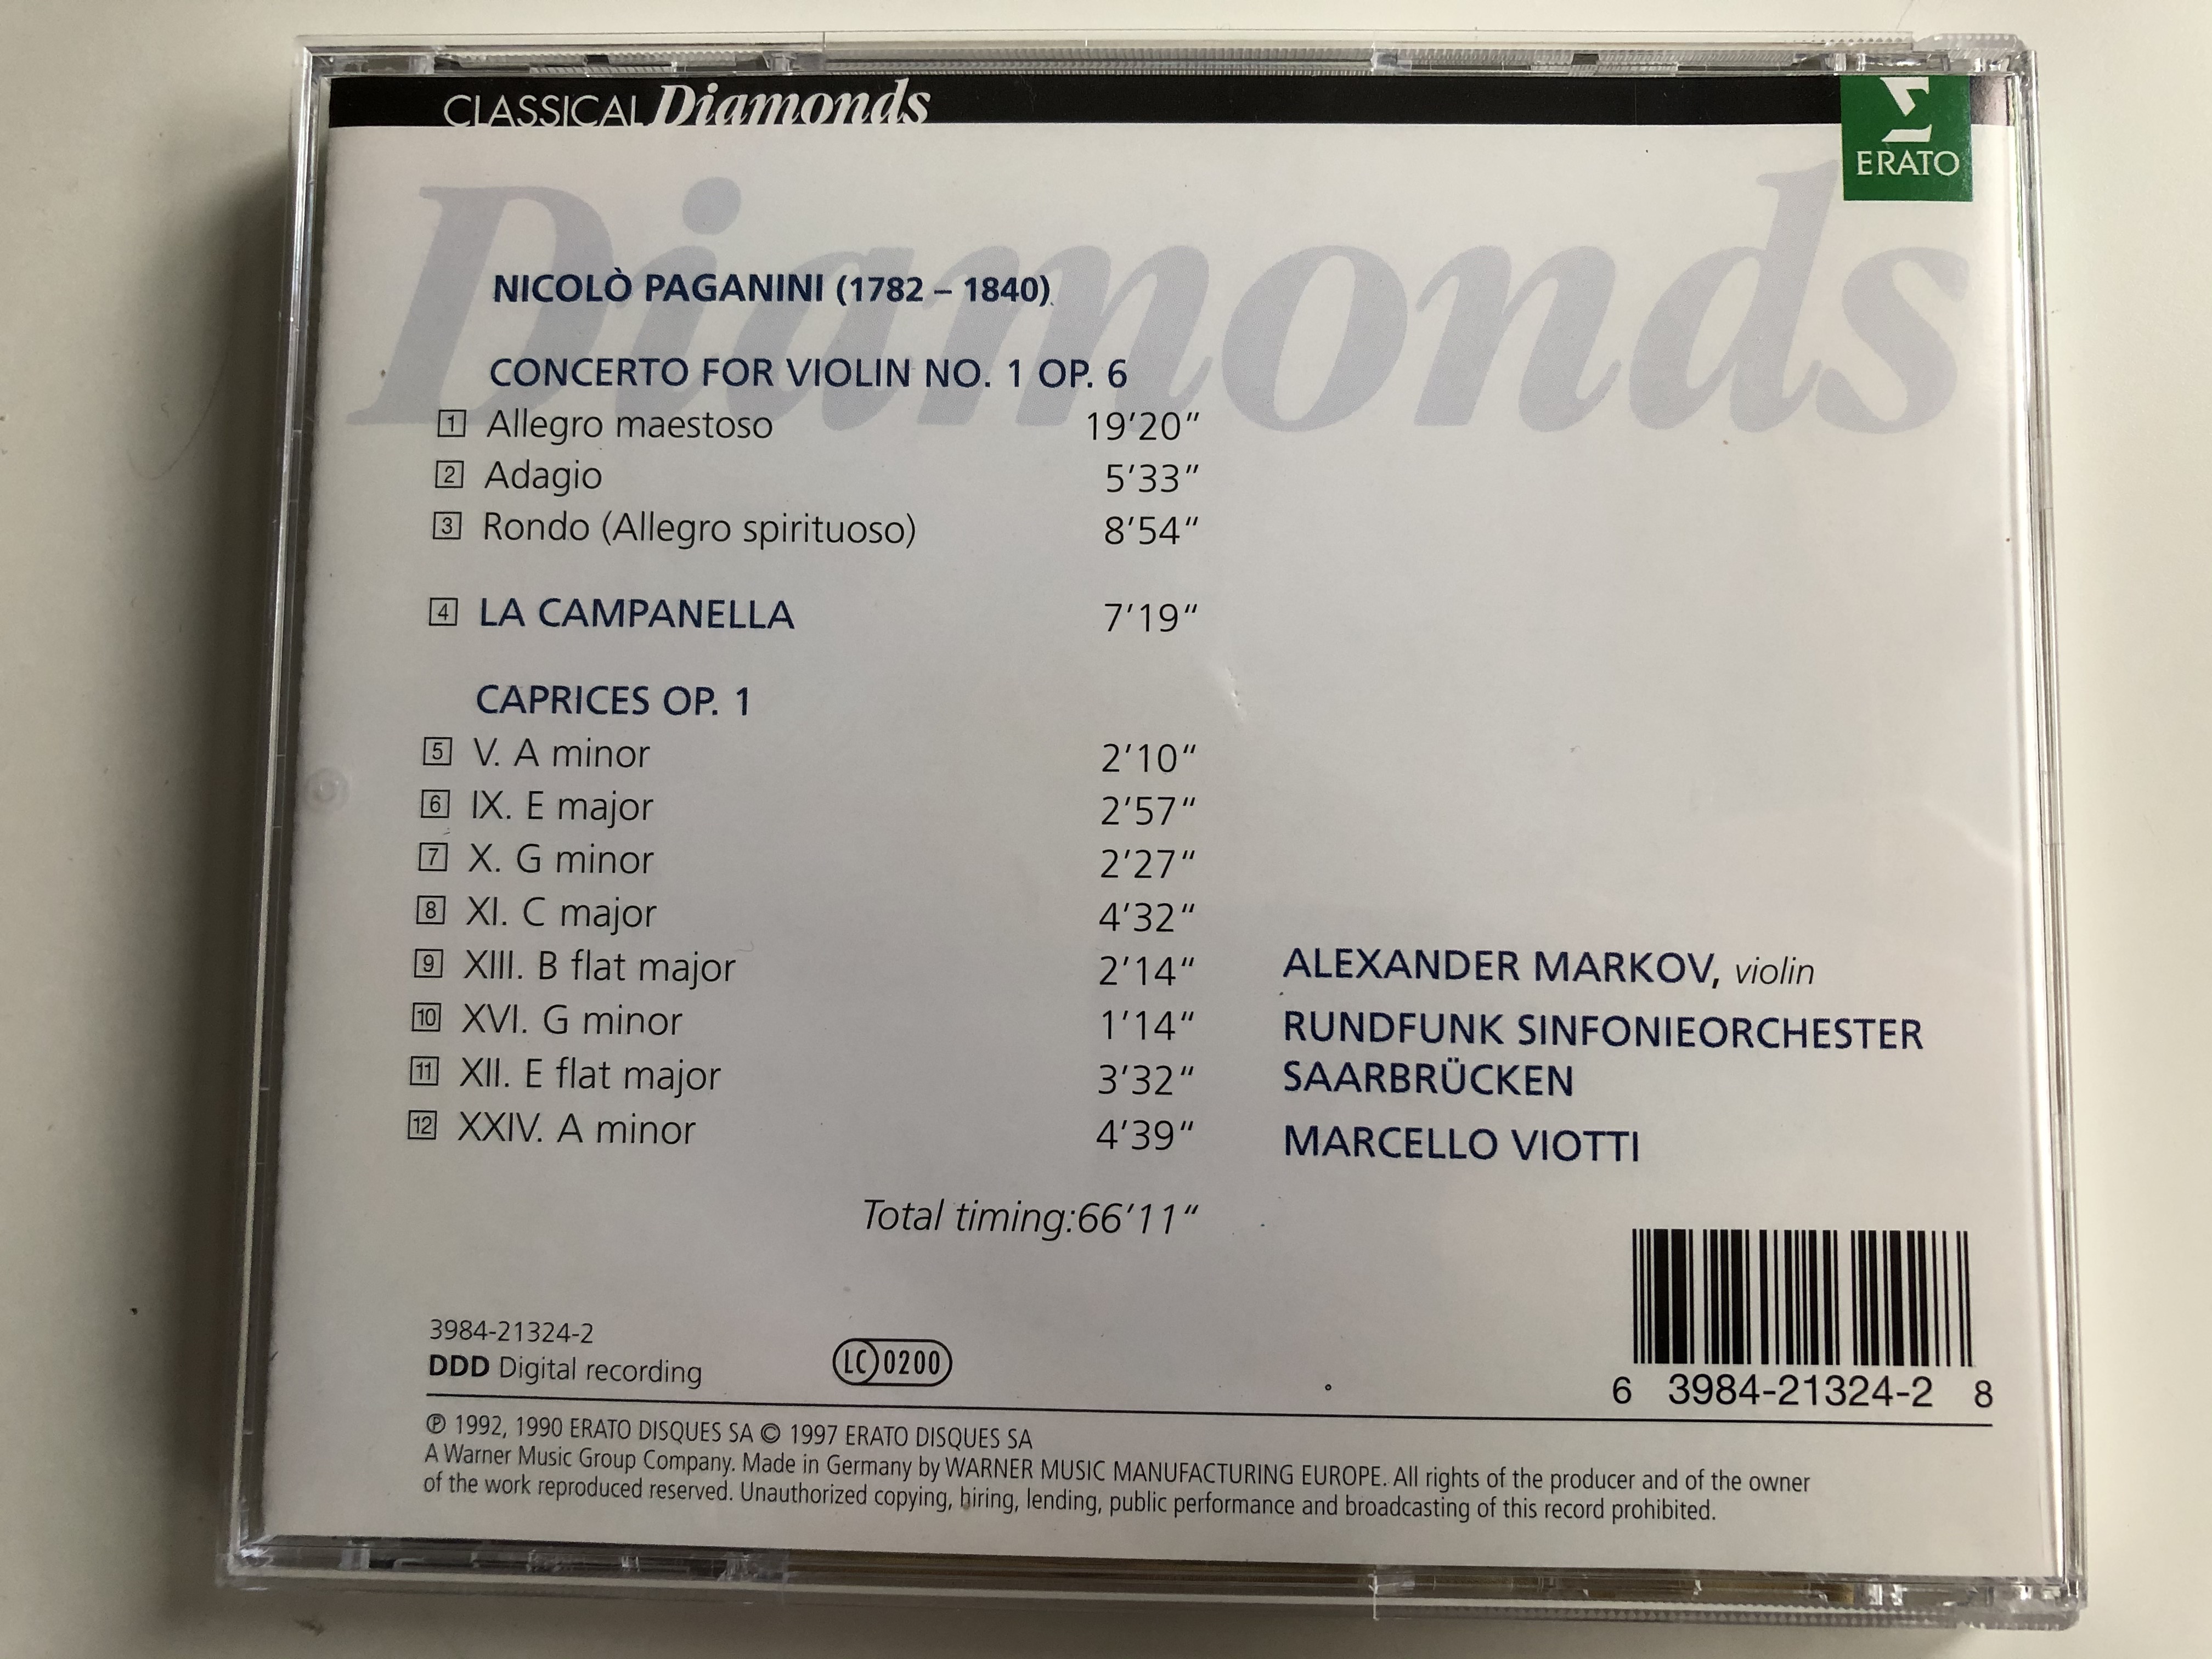 paganini-concerto-for-violin-no.-1-la-campanella-caprices-op.-1-alexander-markov-erato-audio-cd-1997-stereo-3984-21324-2-5-.jpg